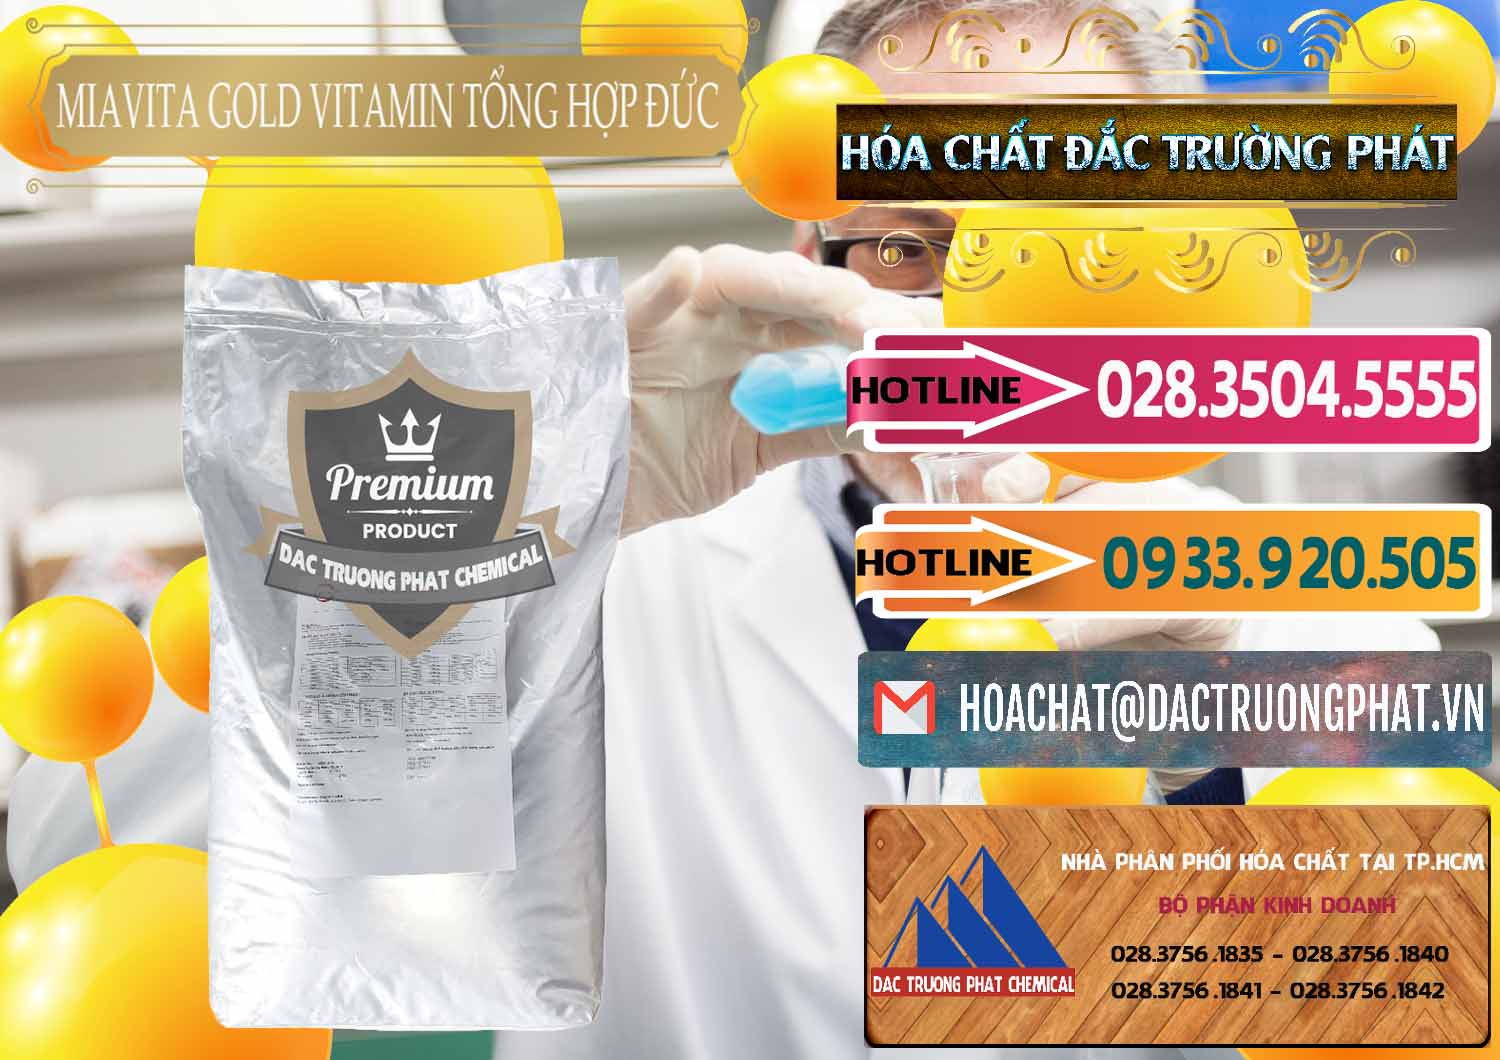 Nơi chuyên phân phối - bán Vitamin Tổng Hợp Miavita Gold Đức Germany - 0307 - Đơn vị phân phối _ cung cấp hóa chất tại TP.HCM - dactruongphat.vn